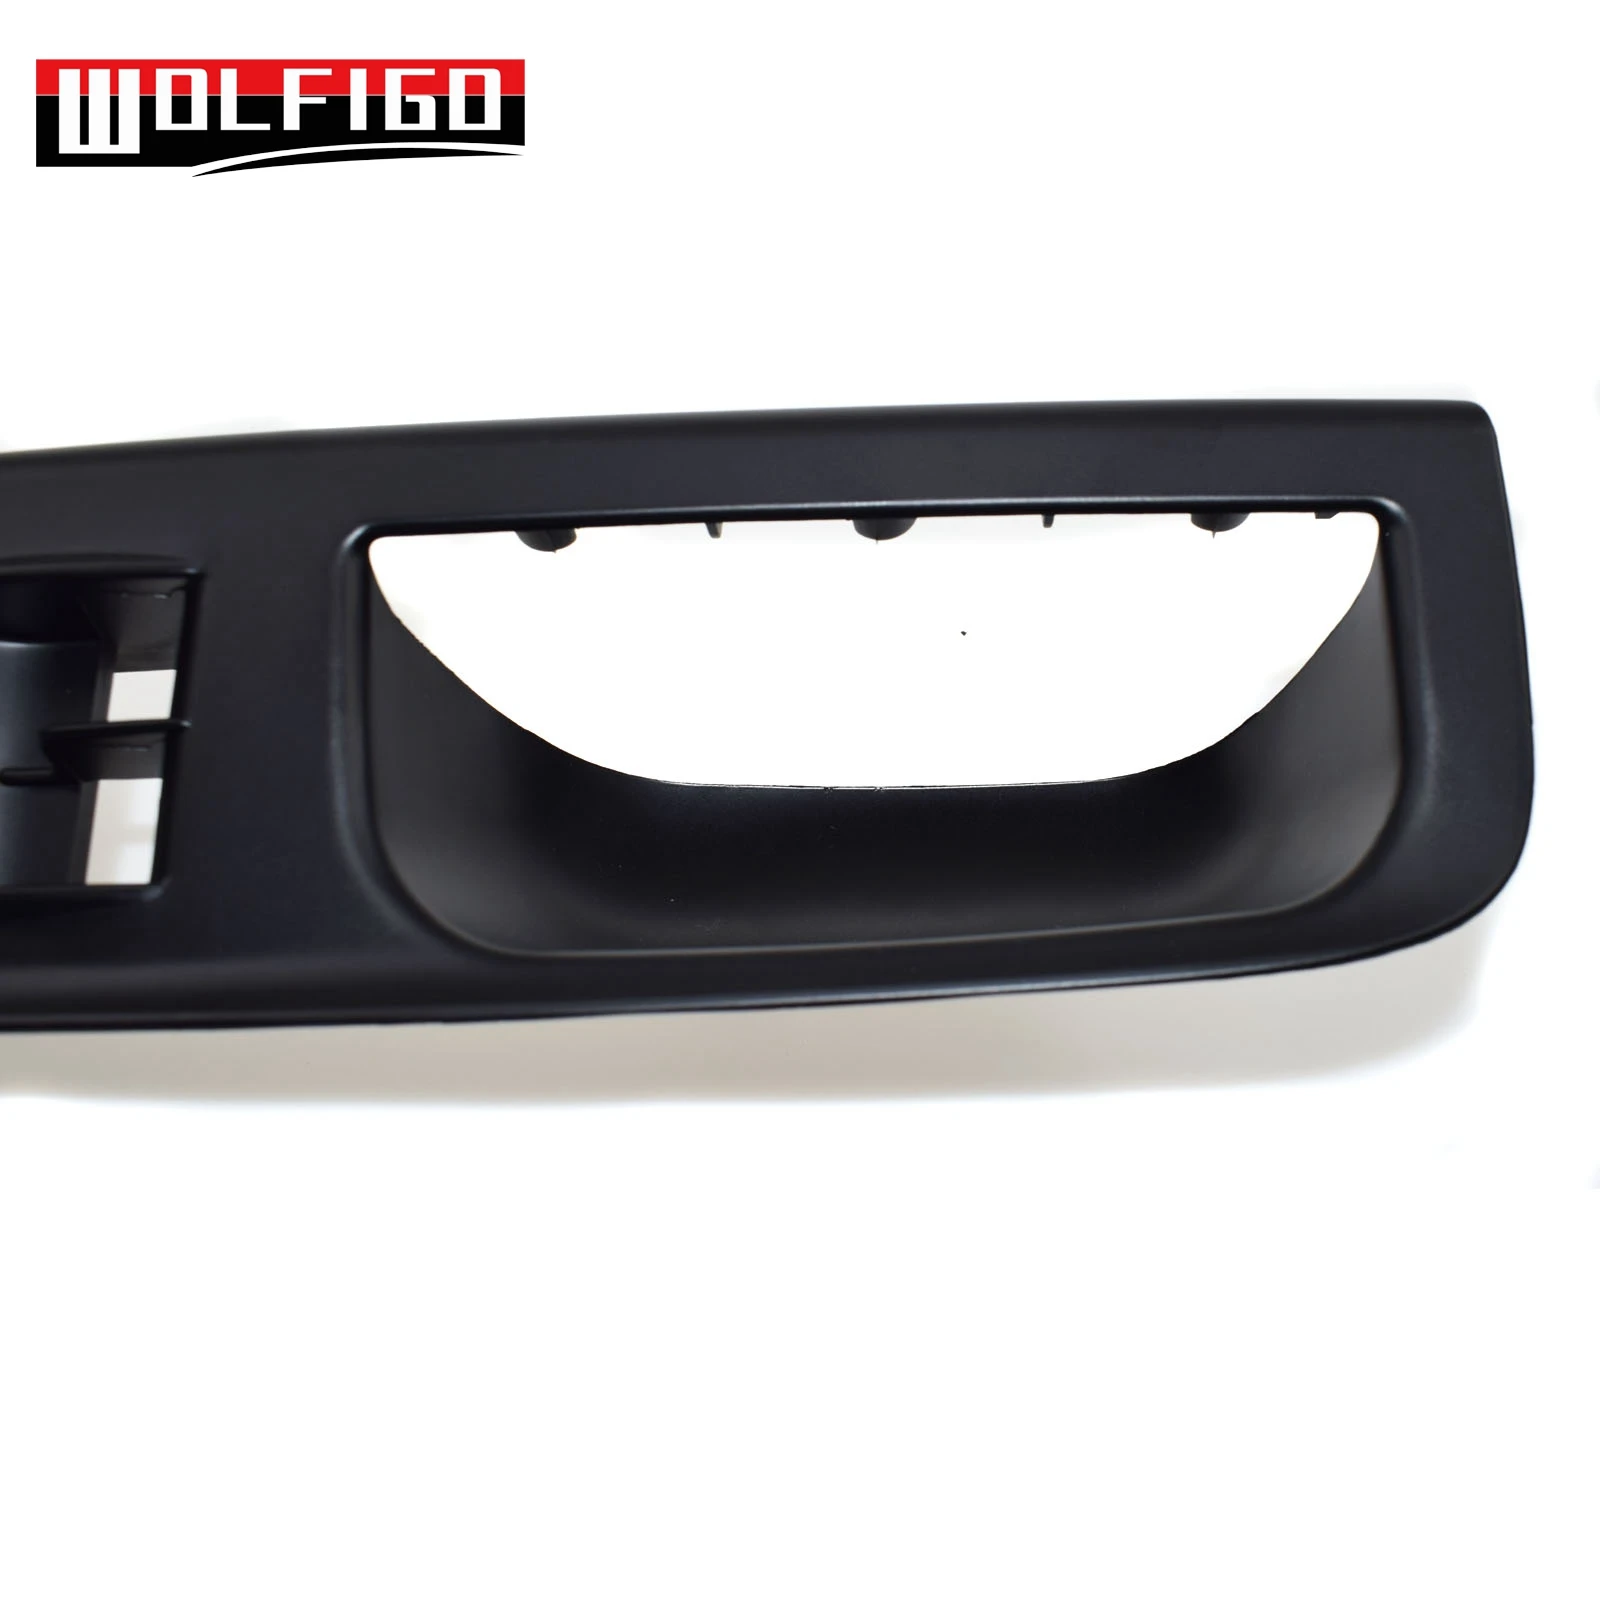 WOLFIGO Fit Passat 2006-2010 мастер-окно зеркало переключатель панель отделка ободок крышка 3C1867171 черный цвет